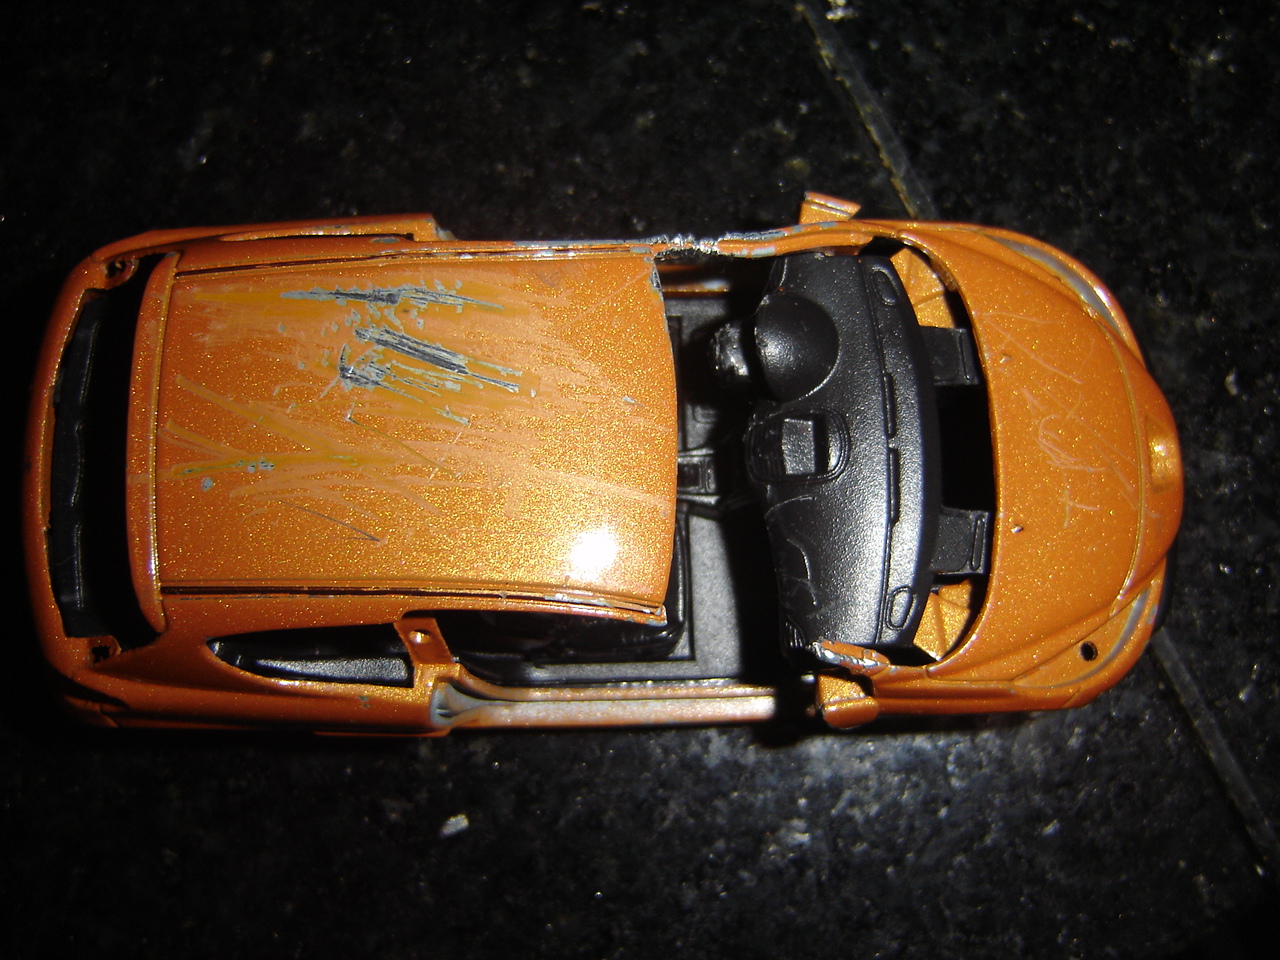 Toy Car Crash Destroying A